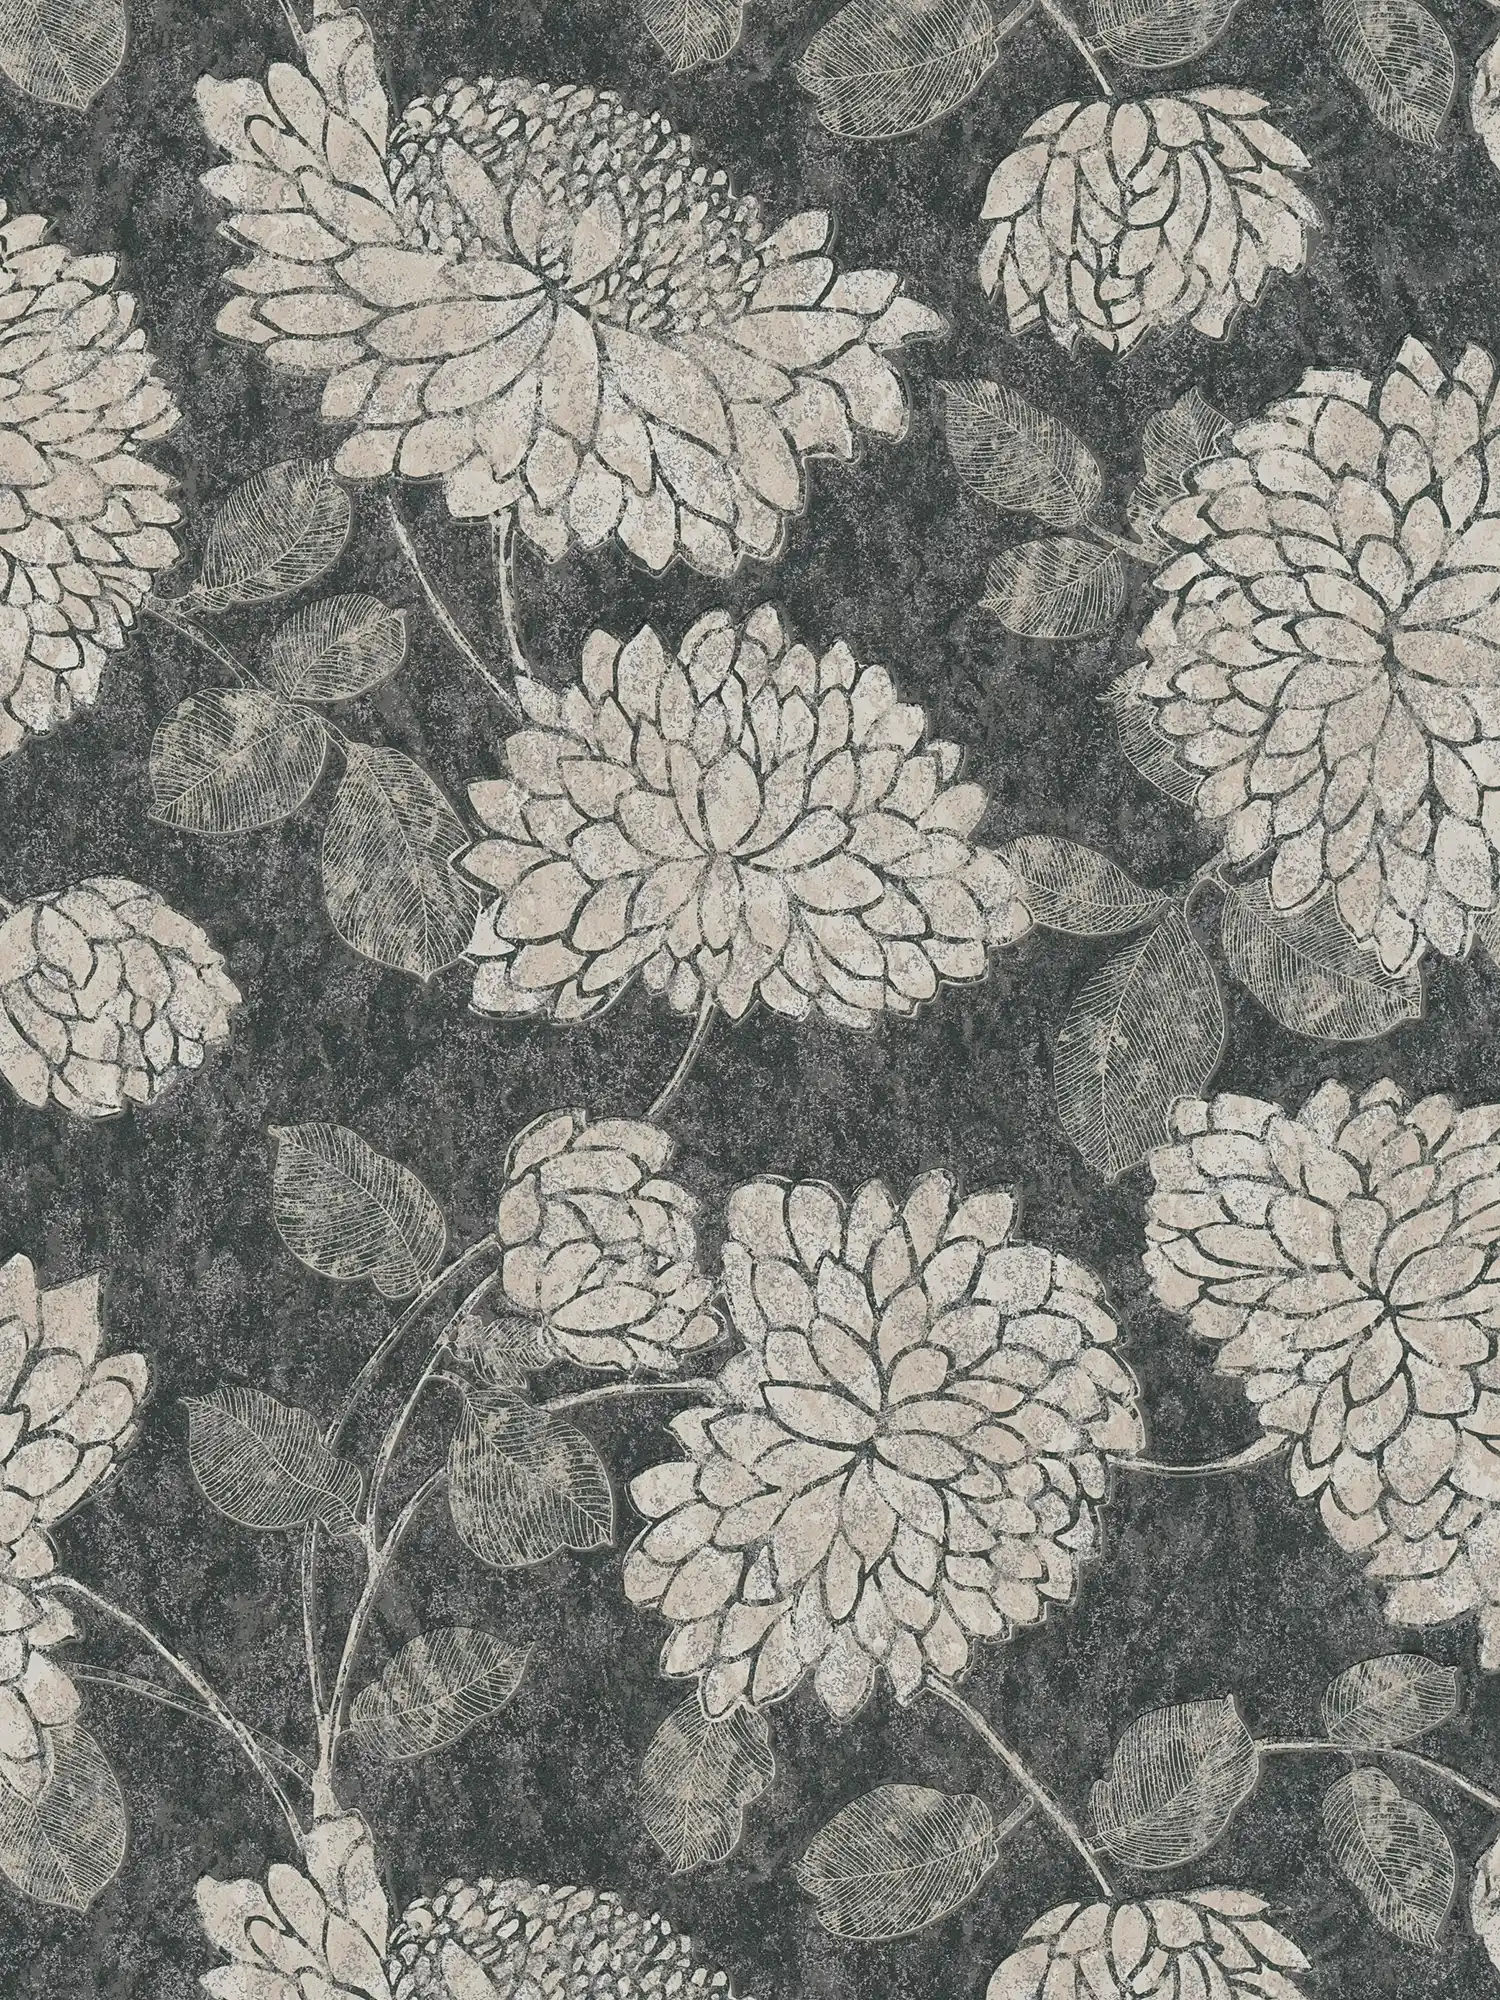 Patroonbehang met bloemen met een lichte glans - zwart, wit, zilver
